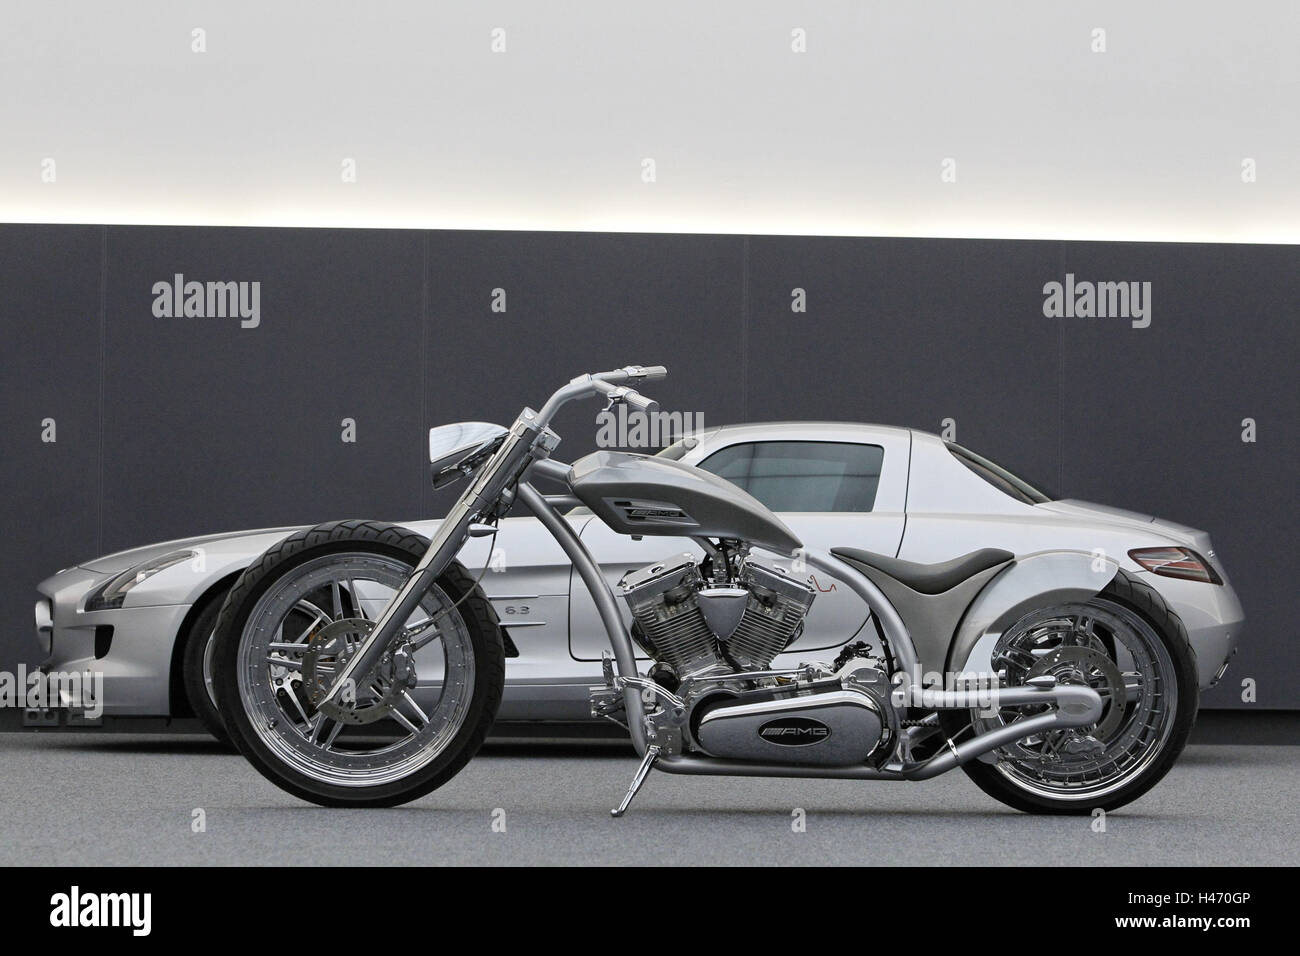 Motos chopper, AMG, el diseño de la motocicleta, coche, Mercedes SLS AMG Modelo de puerta de ala en el fondo, plata Foto de stock